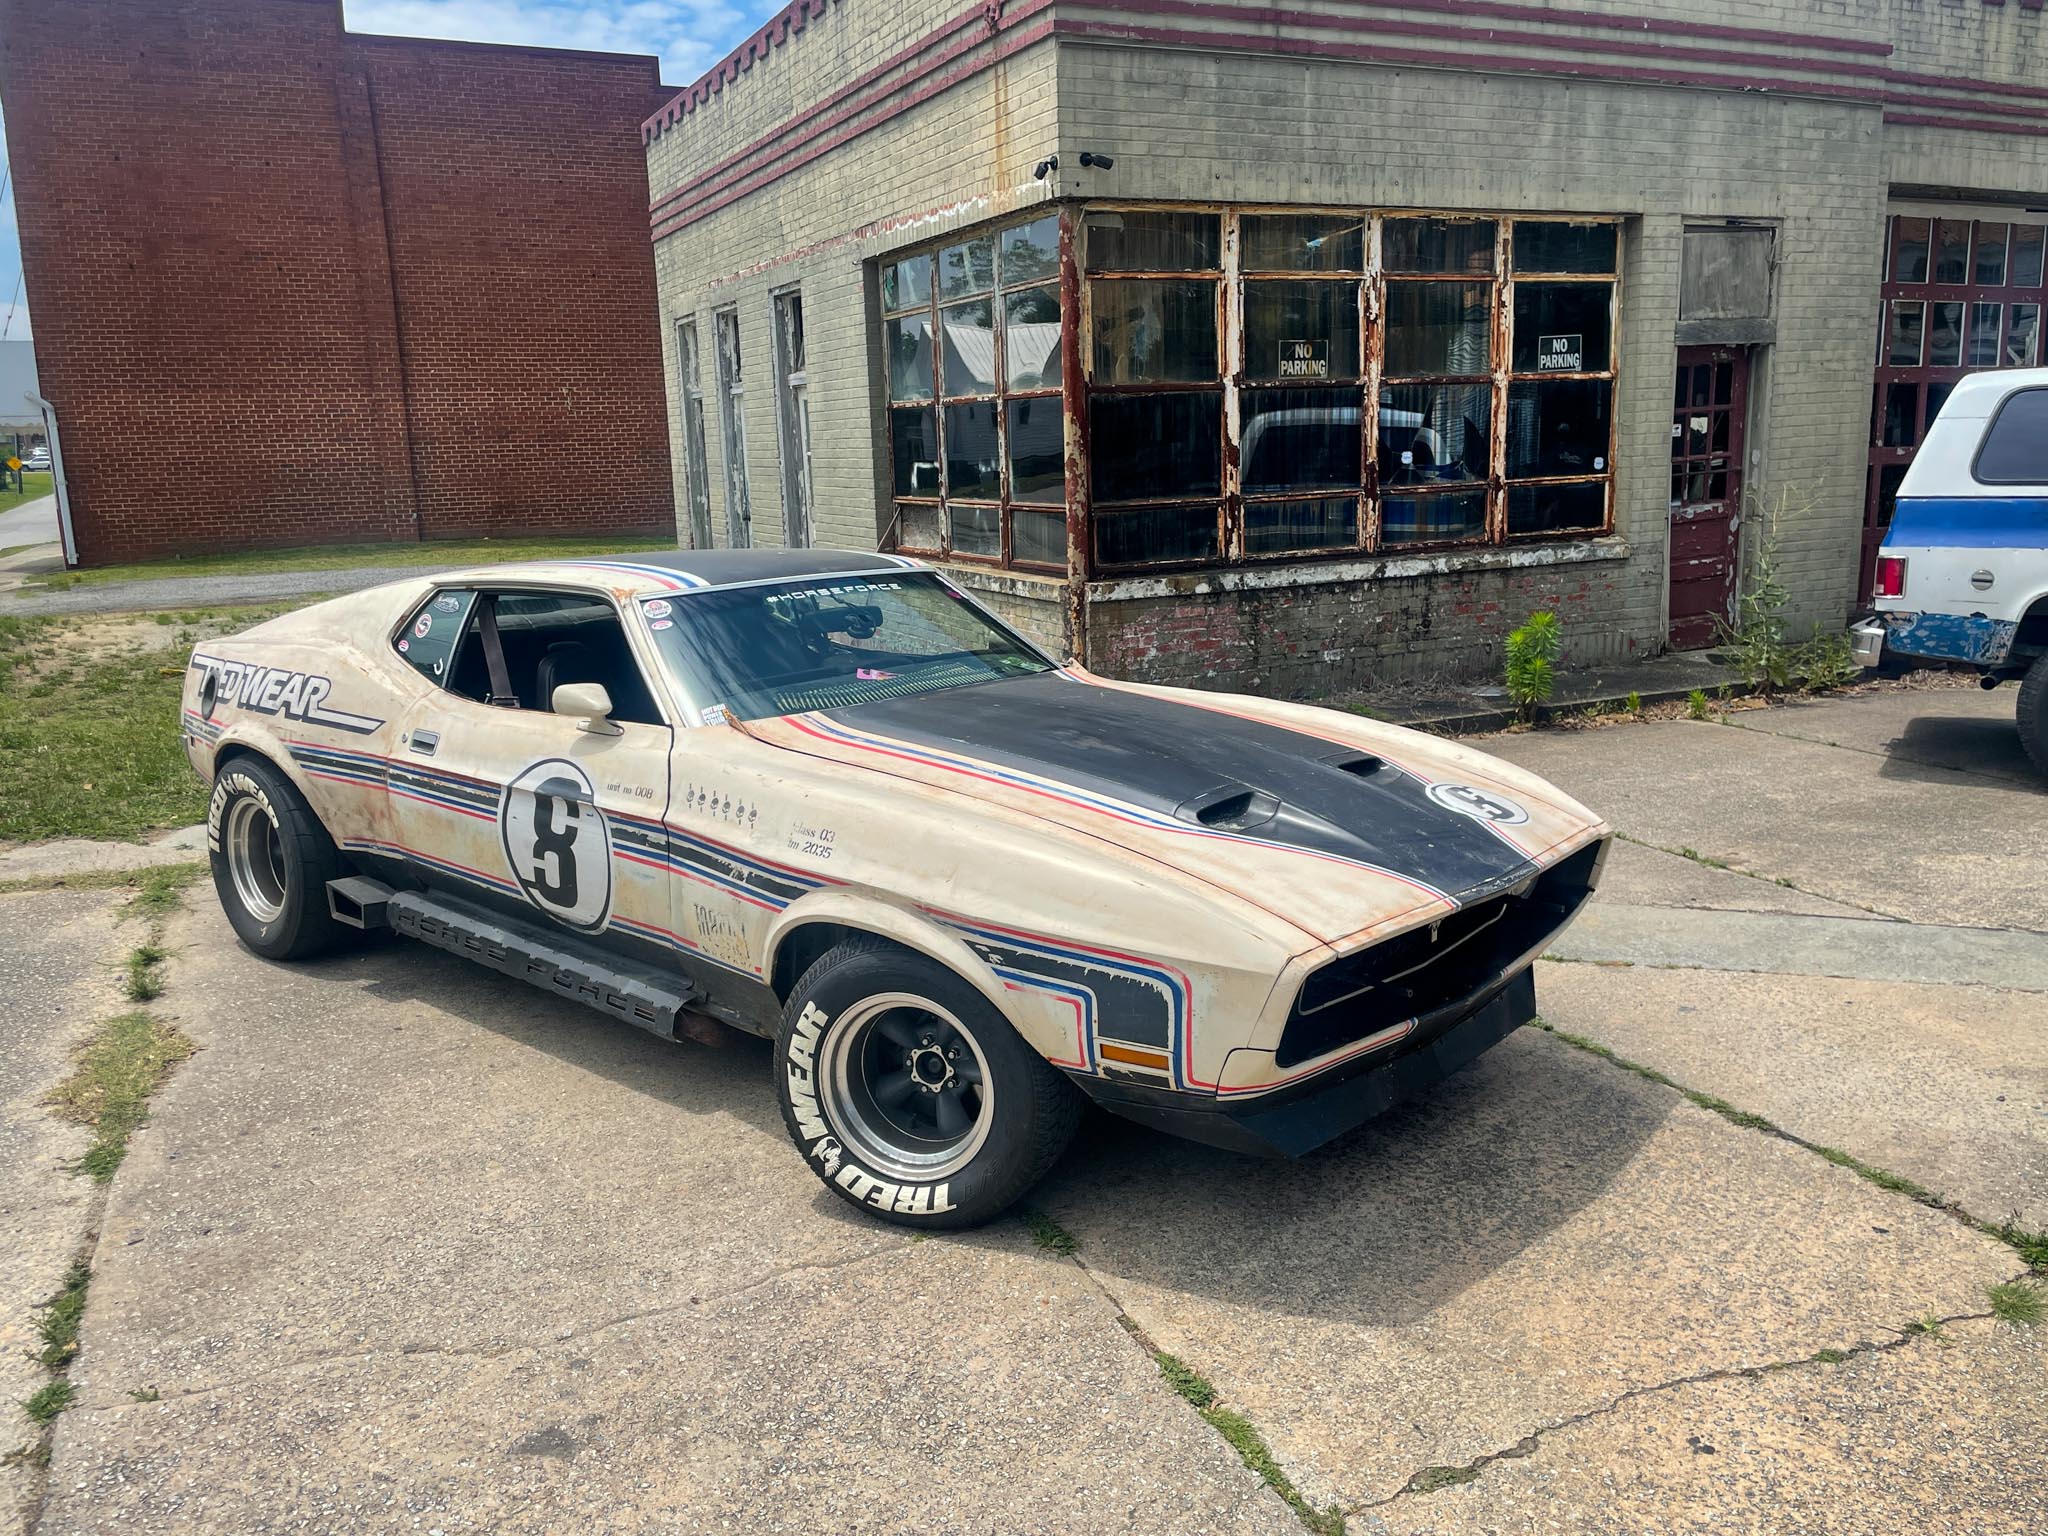 70s mach 1 Mustang